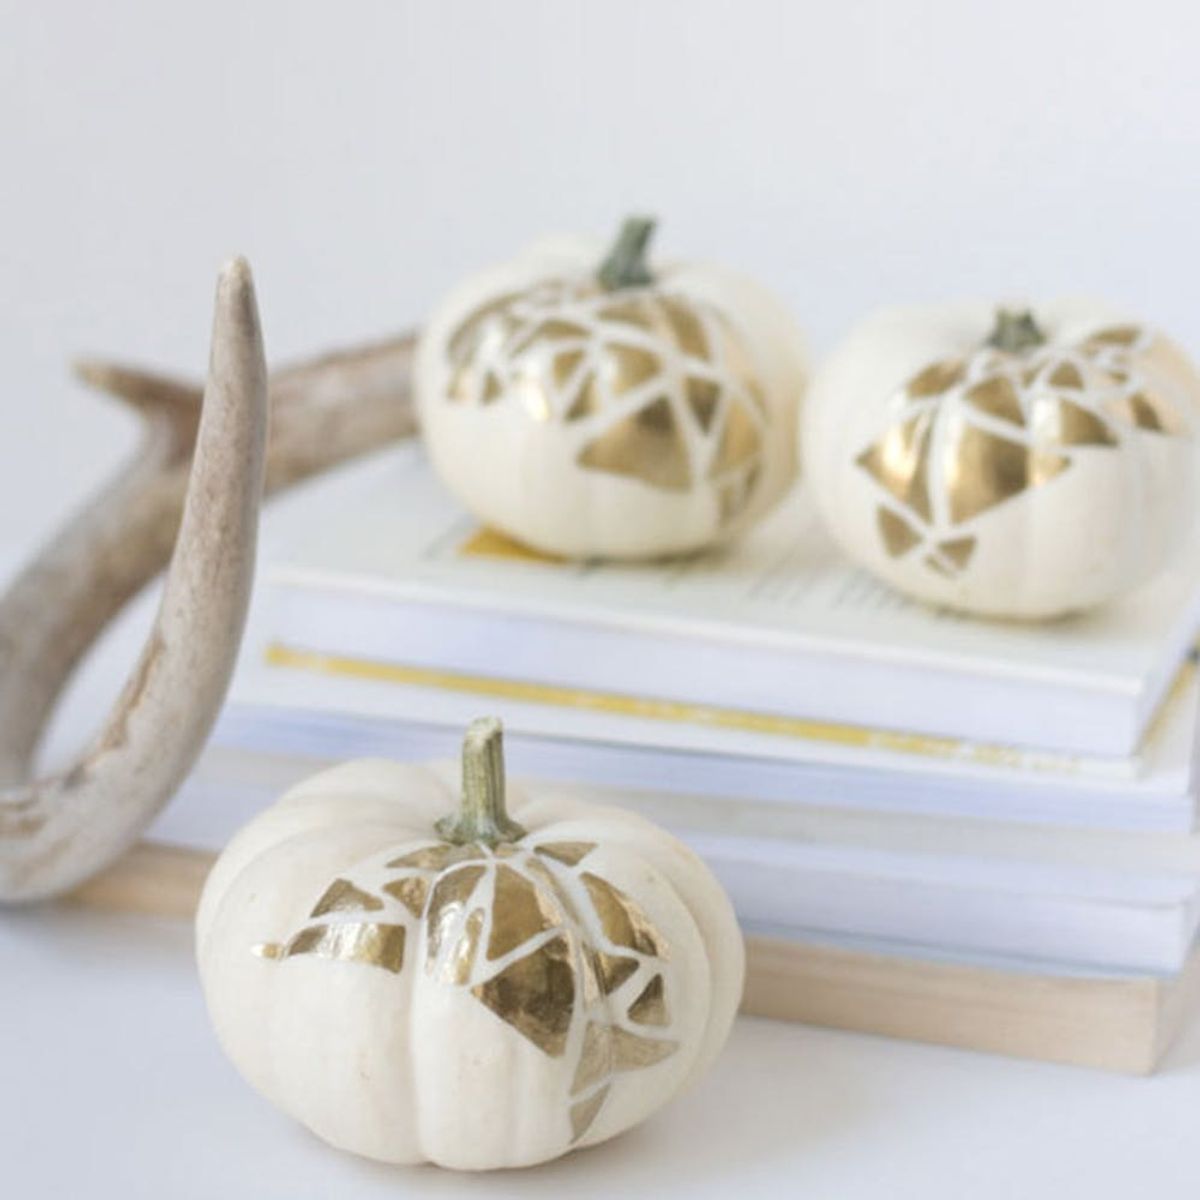 The Top Pinned Halloween Pumpkin Ideas from Pinterest